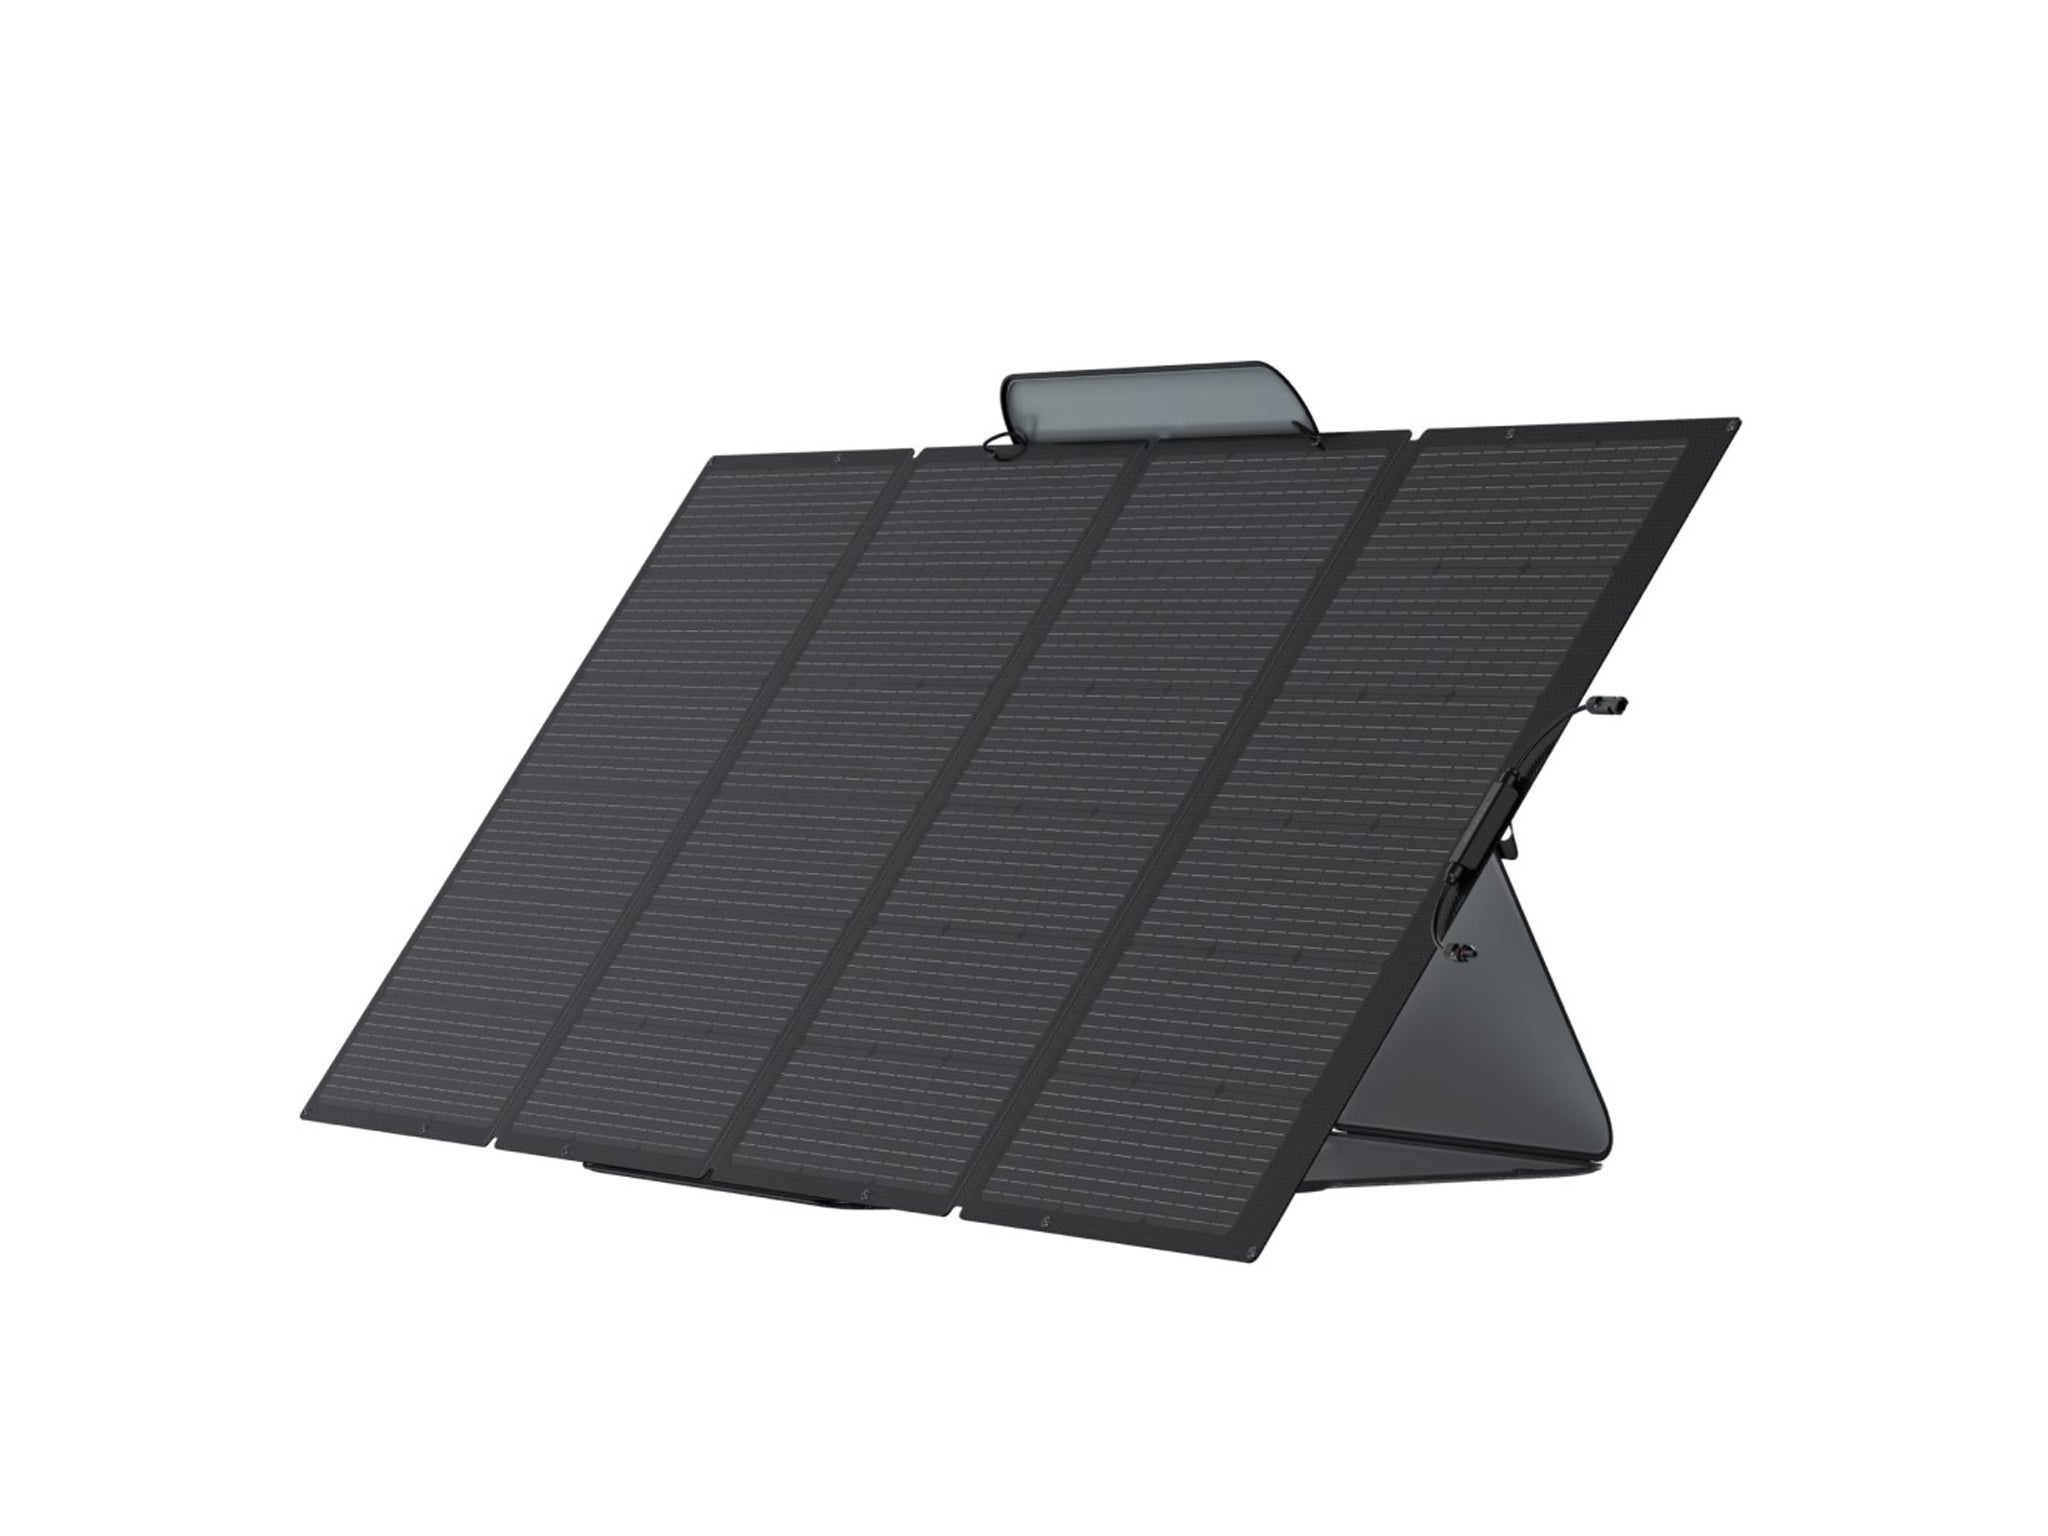 Ecoflow 220W solar panel